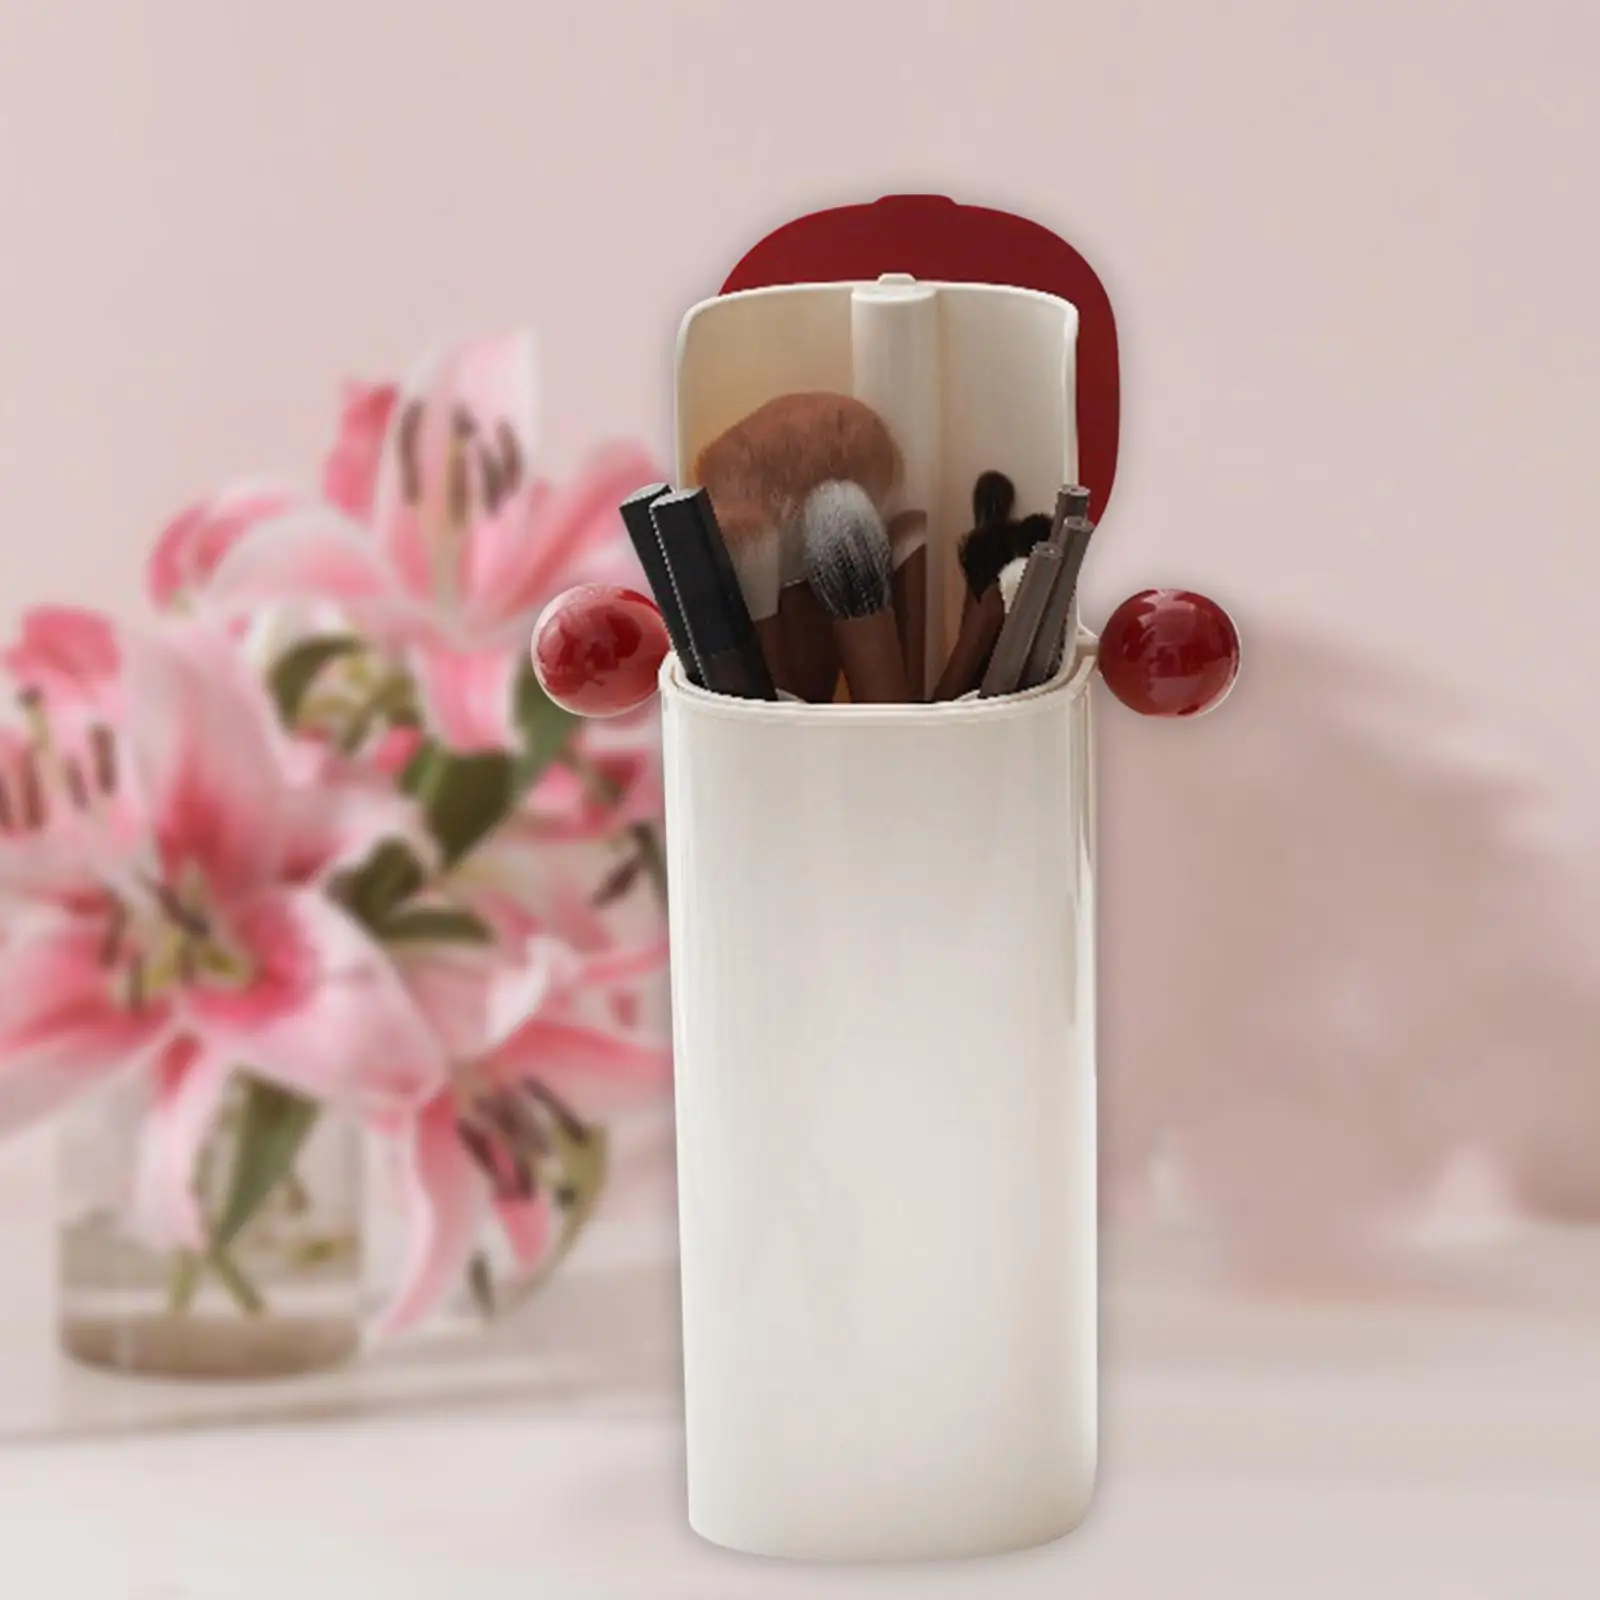 Makeup Organizer Multi Grids Cosmetic Storage Organizer Make up Holder Display Case for Bedroom Desk Dresser Bathroom Vanity